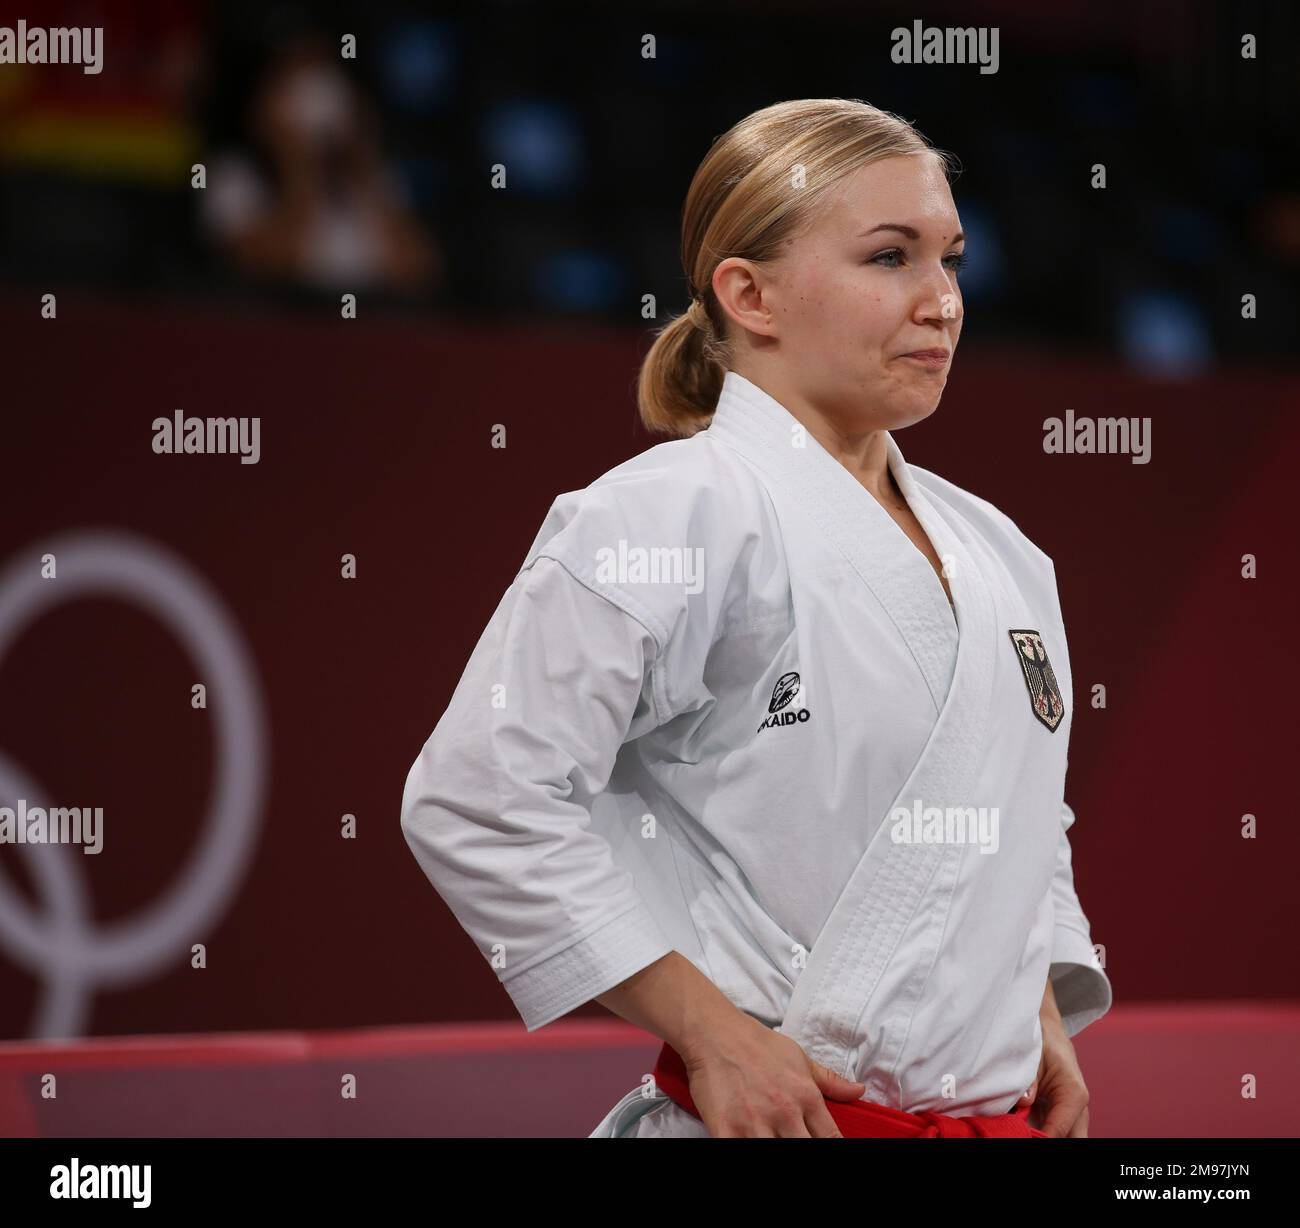 5 AGOSTO 2021 - TOKYO, GIAPPONE: Jasmine Jüttner di Germania sta per fare la storia diventando il primo Karateka alle Olimpiadi gareggiando nel Kata elimination Round femminile ai Giochi Olimpici di Tokyo 2020 (Foto di Mickael Chavet/RX) Foto Stock